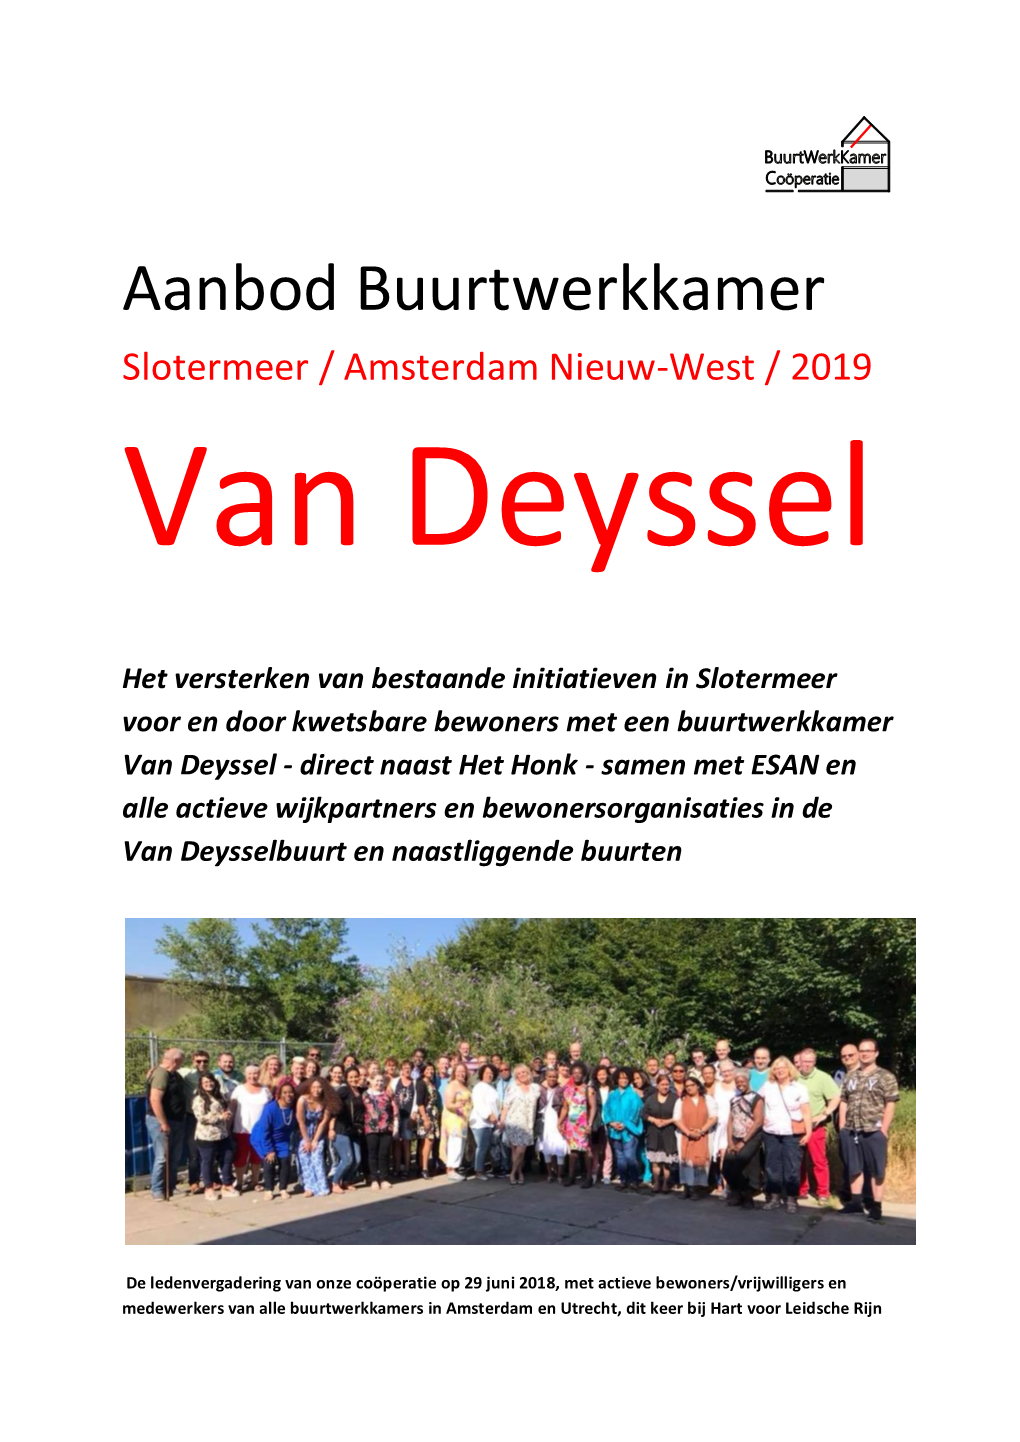 Aanbod Buurtwerkkamer Van Deyssel-Slotermeer Amsterdam 2019